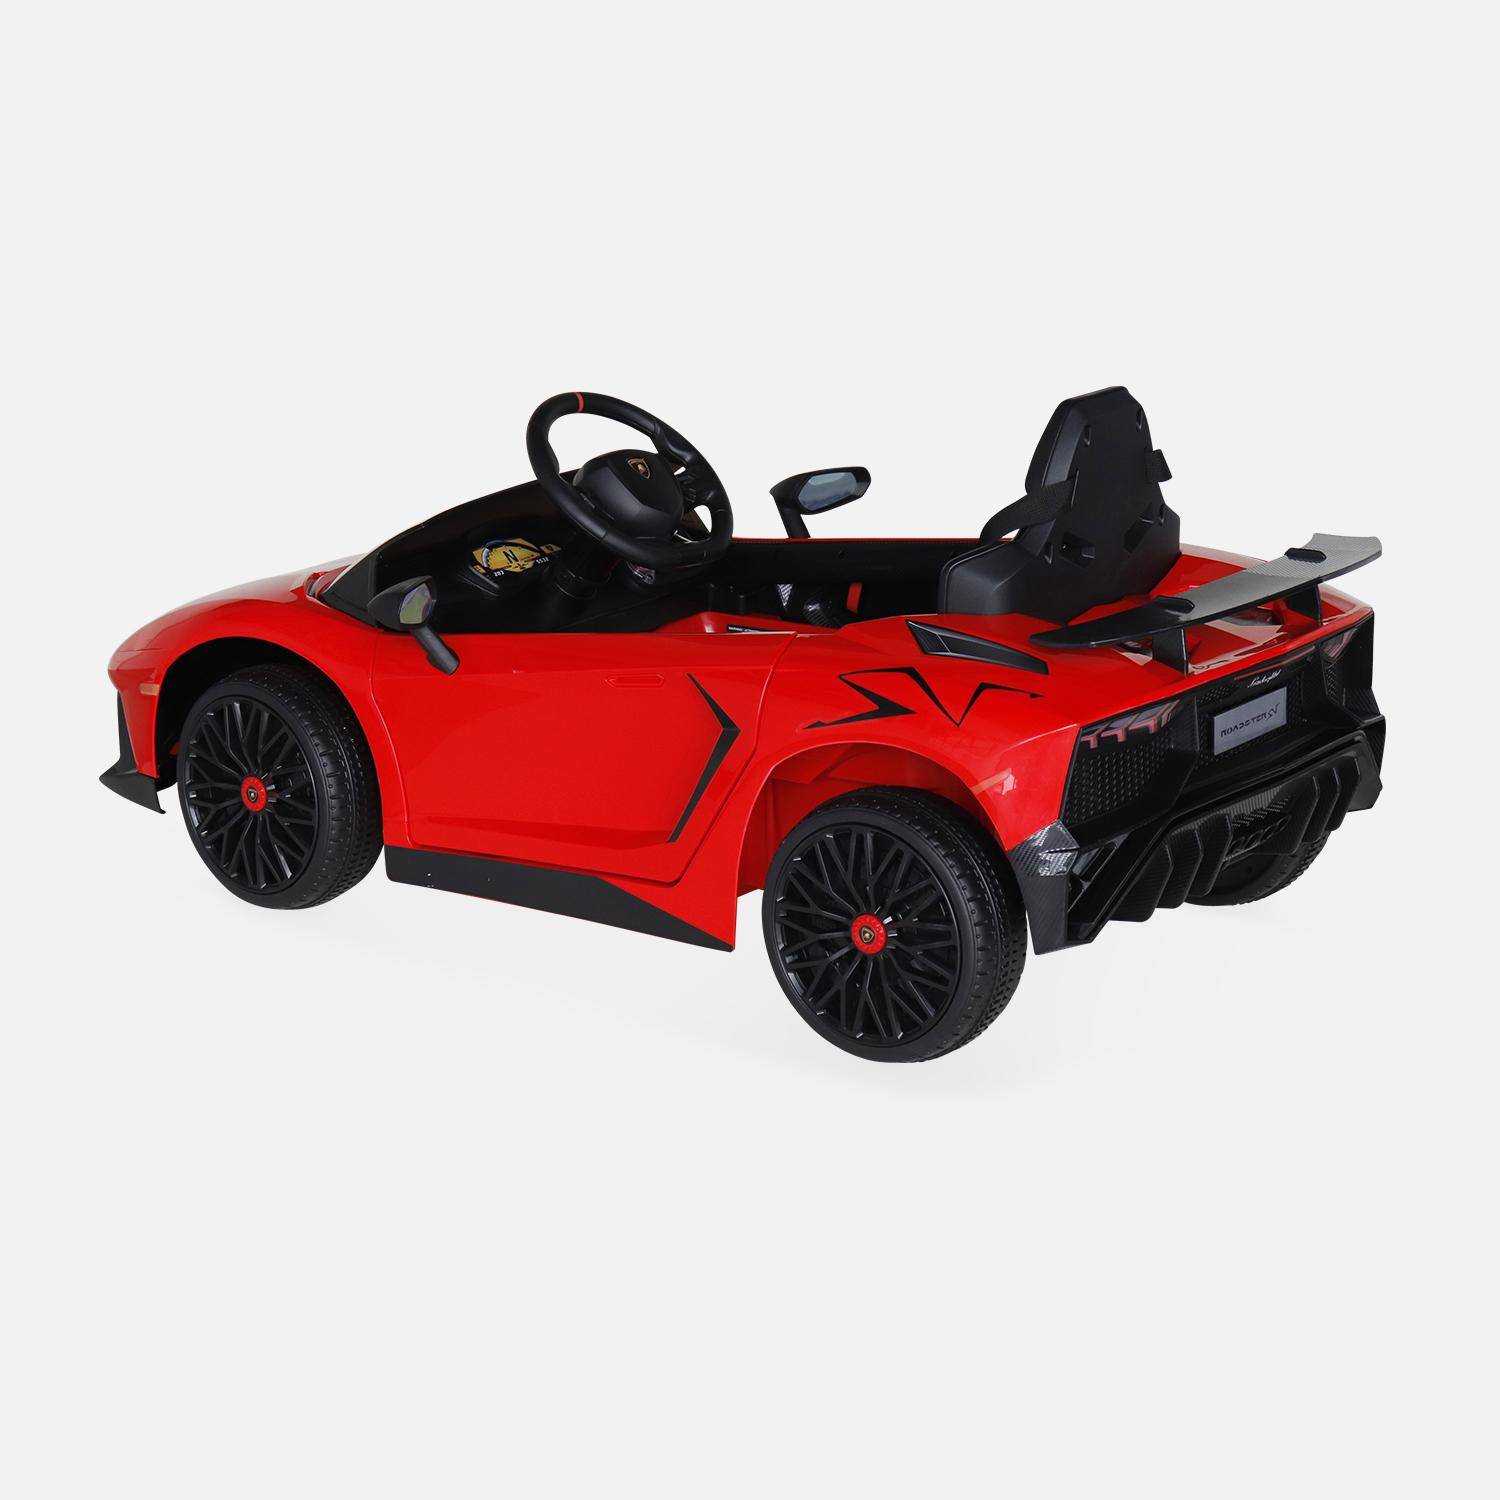 12V Lamborghini elektrische kinderauto, rood, 1 zitplaats, met autoradio, afstandsbediening, MP3, USB-poort en koplampen. Snelle levering, 2 jaar garantie. Photo3